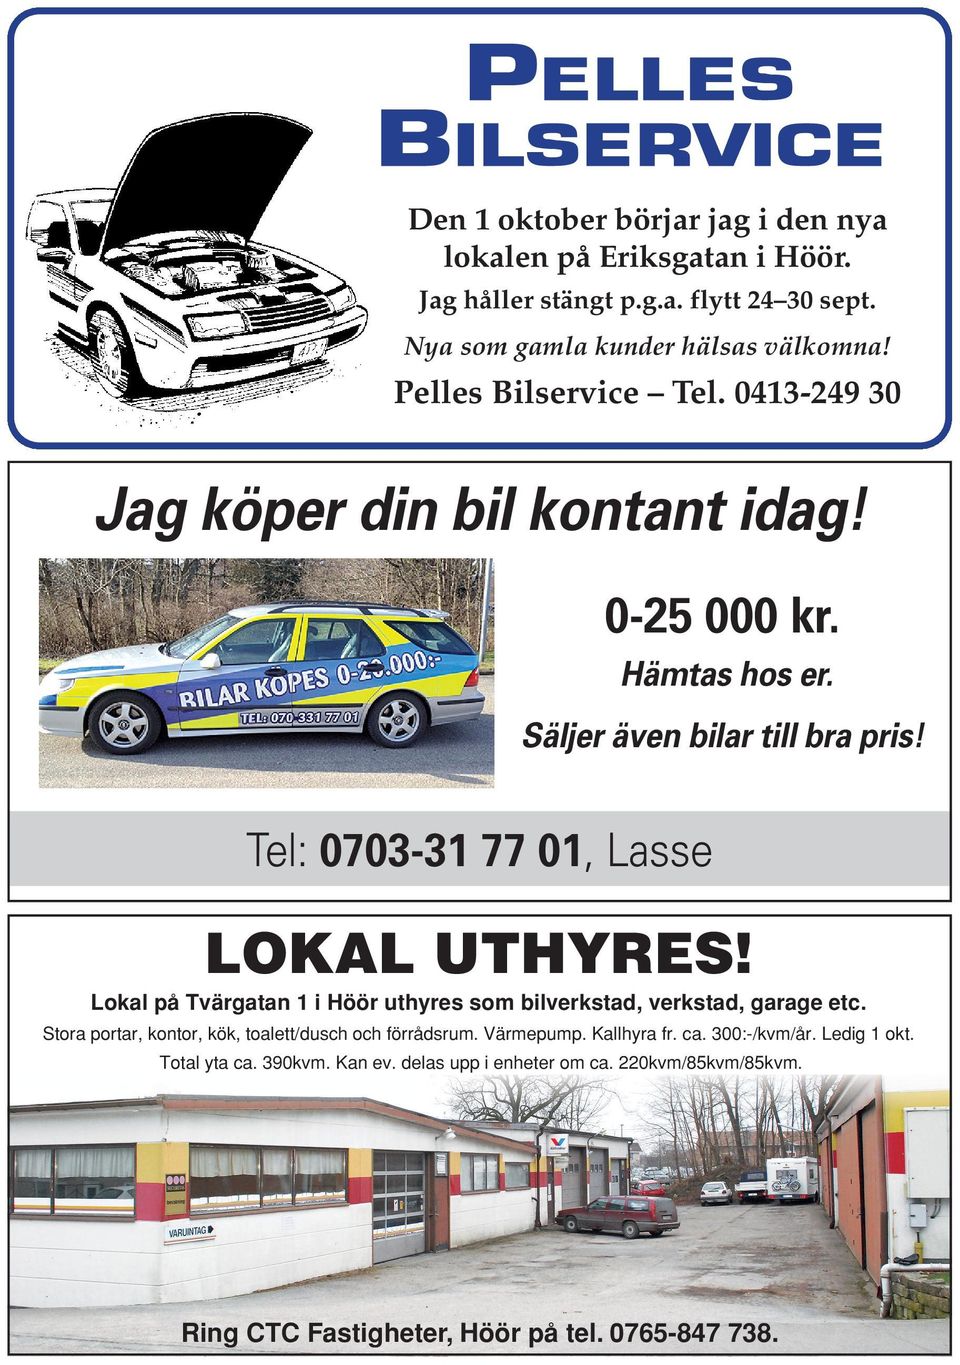 Tel: 0703-31 77 01, Lasse LOKAL UTHYRES! Lokal på Tvärgatan 1 i Höör uthyres som bilverkstad, verkstad, garage etc.